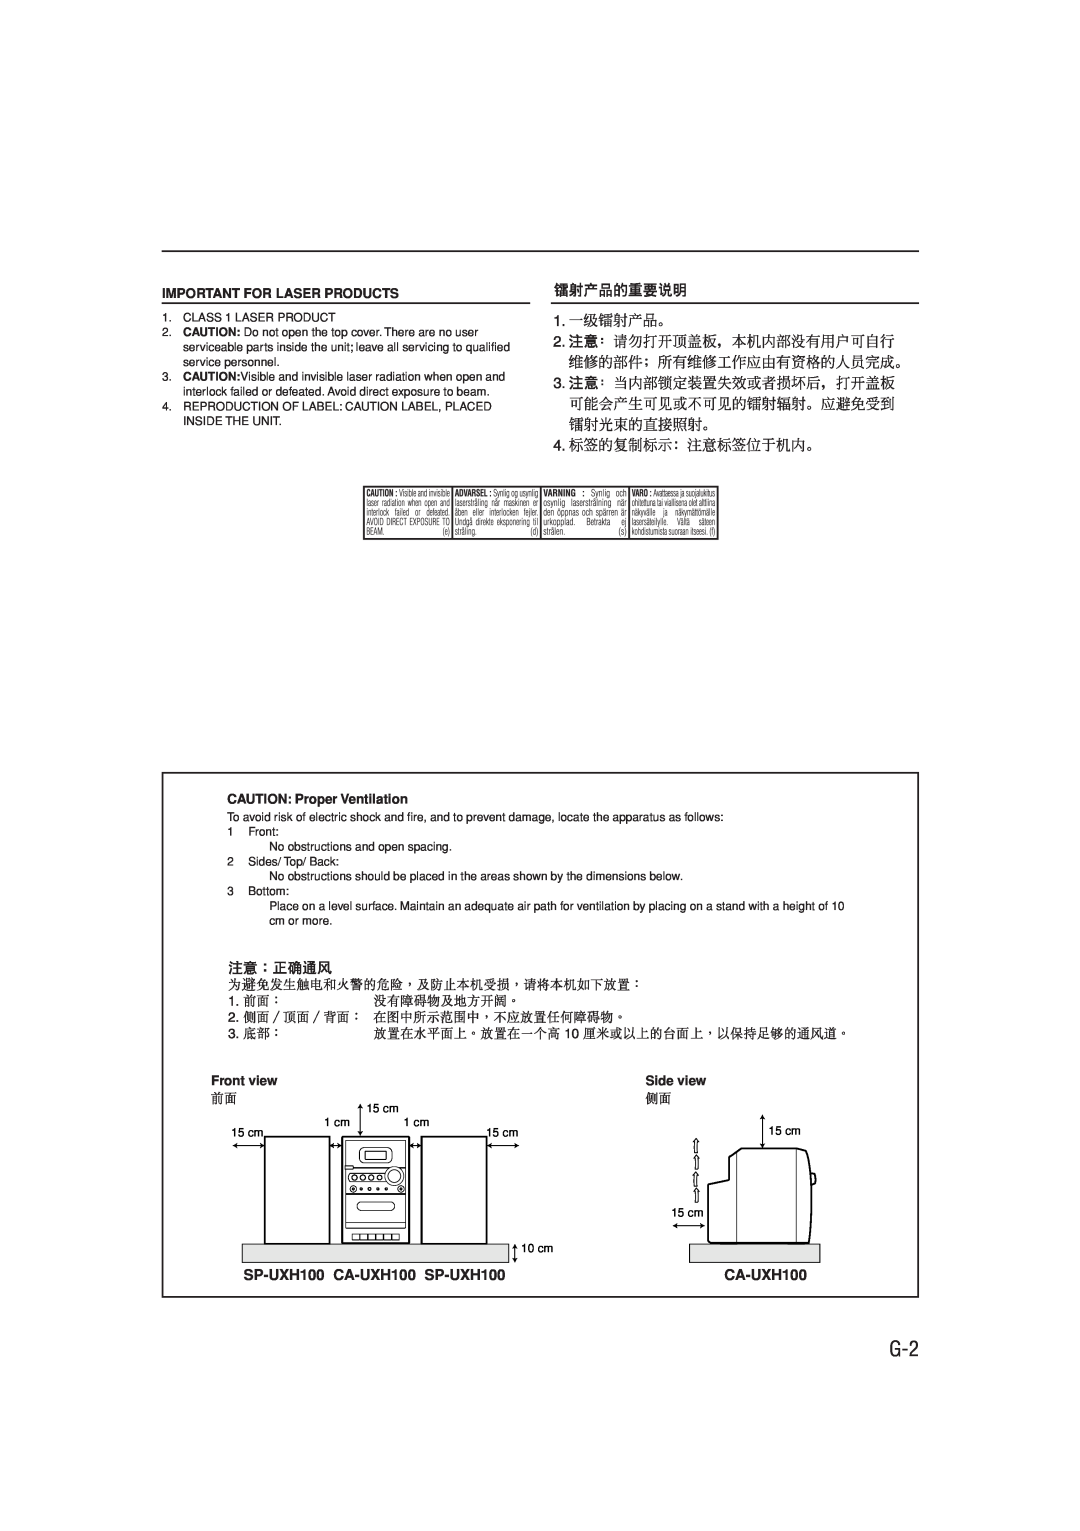 JVC UX-H100 manual SP-UXH100 CA-UXH100 SP-UXH100, Important For Laser Products, CAUTION: Proper Ventilation, Front view 